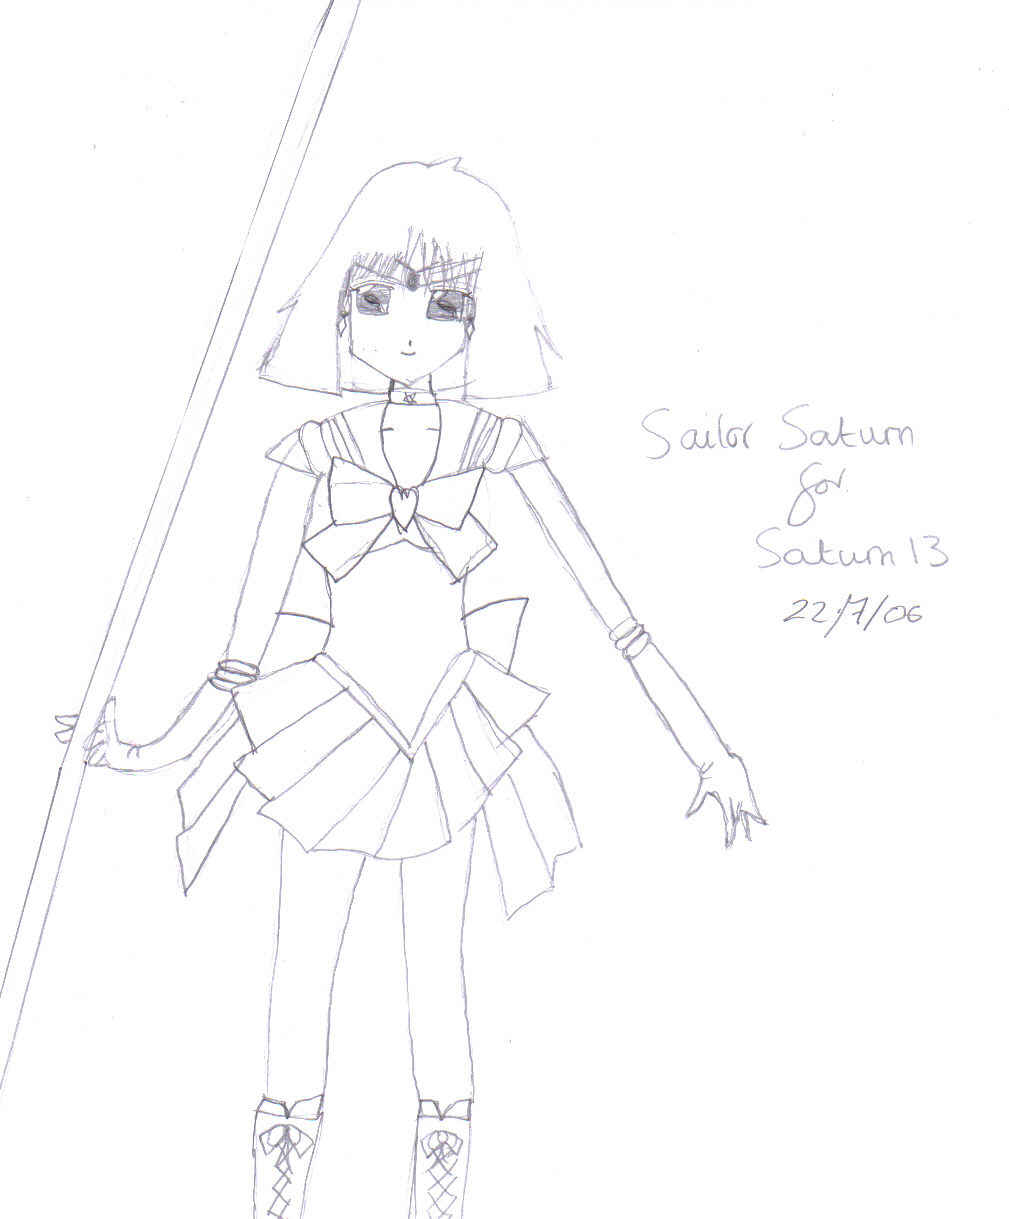 request for Saturn13 by cyborg_katyuska